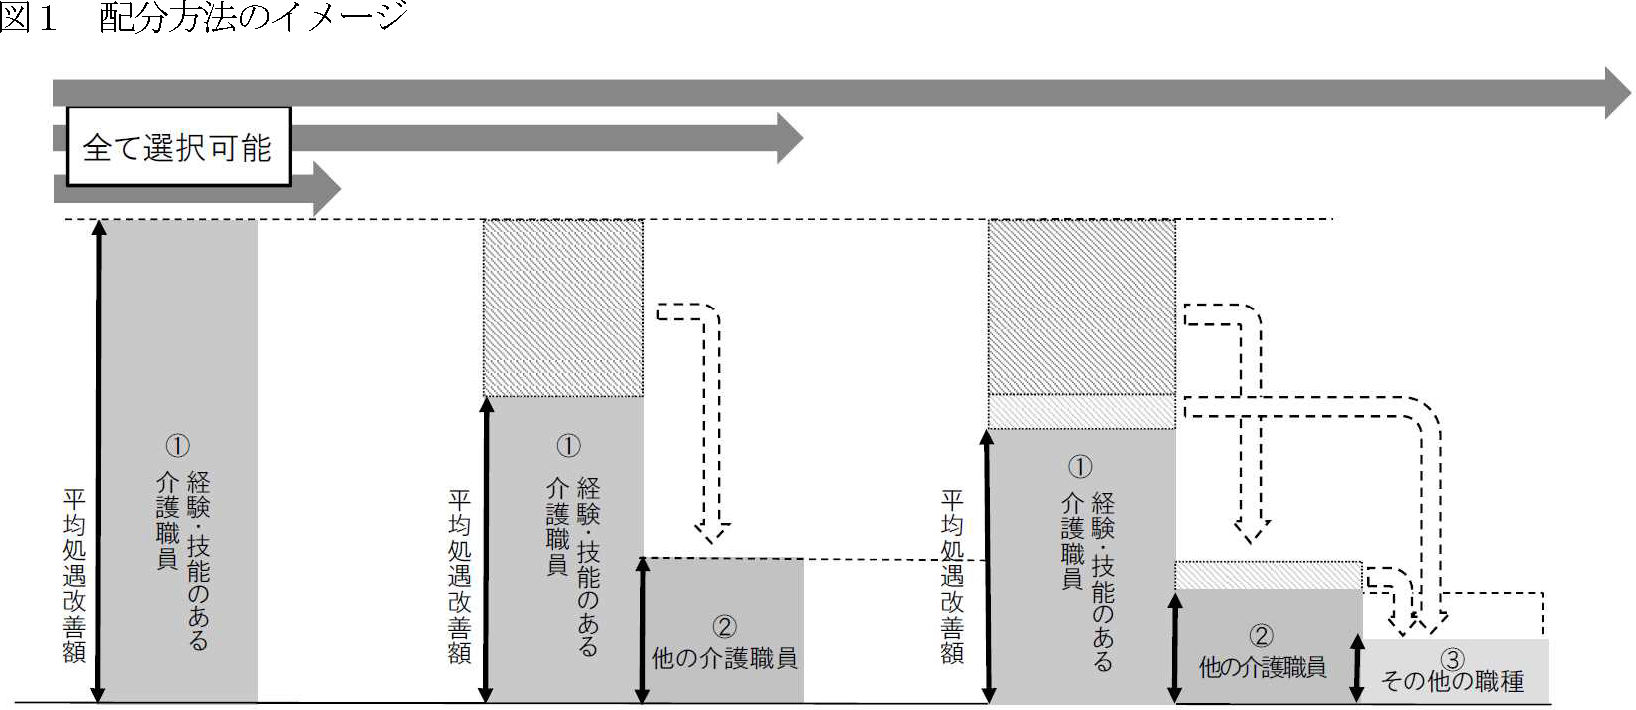 図１　配分方法のイメージ